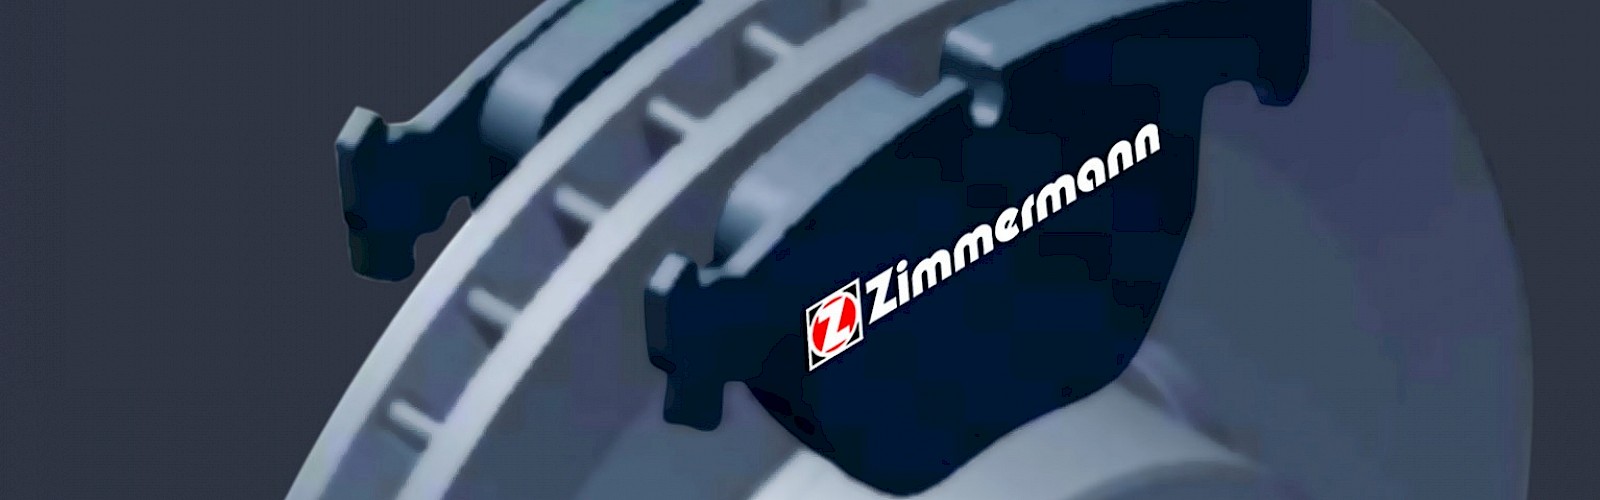 Zimmermann Brake Kit for MERCEDES-BENZ SPRINTER 4-t Pritsche